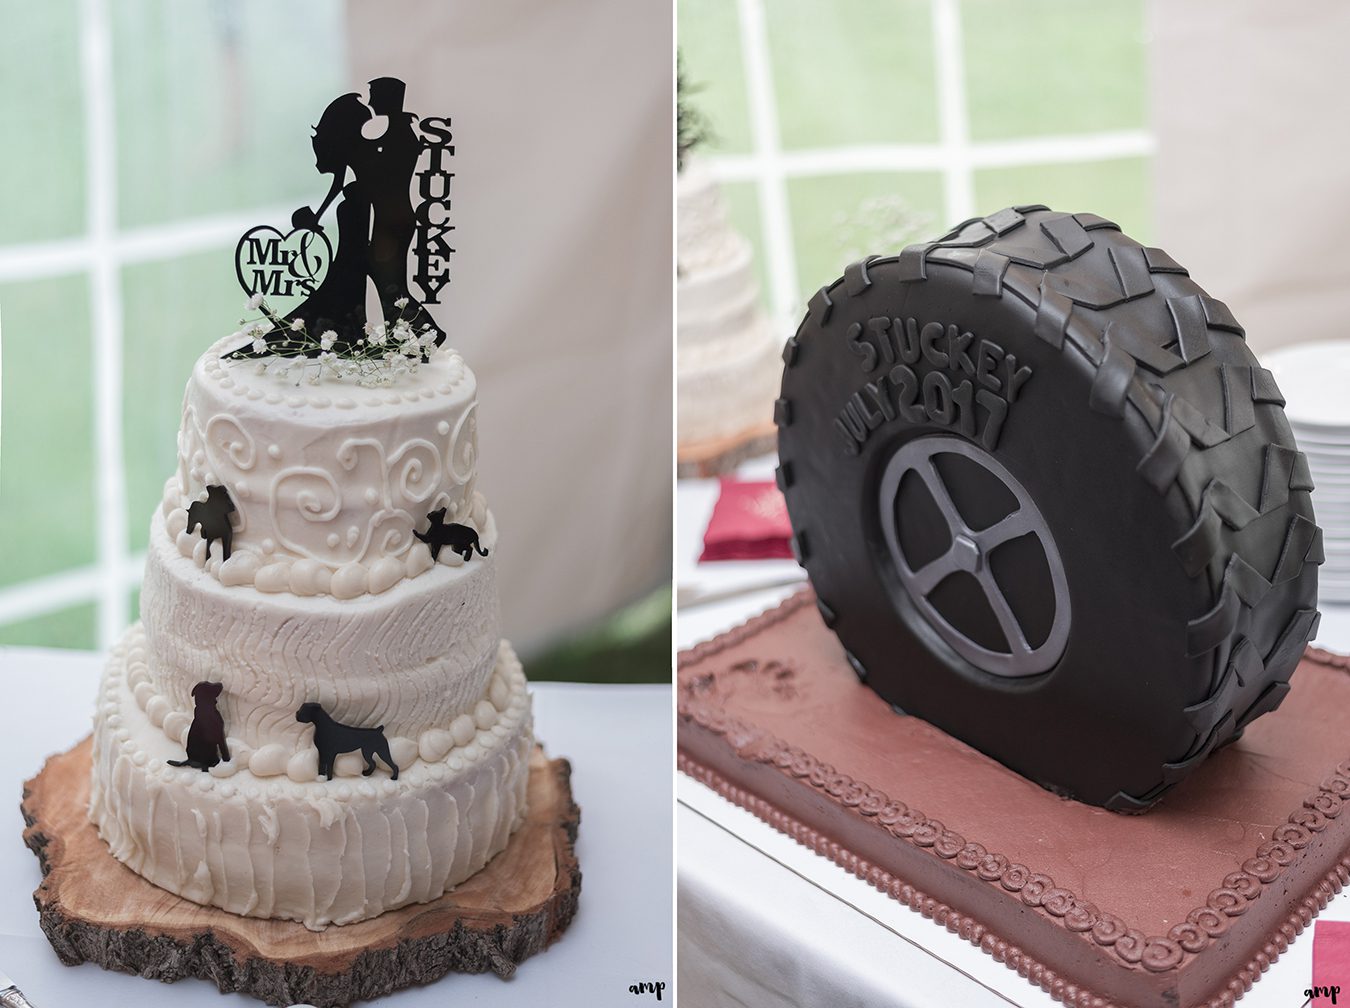 Wedding cake and groom's cake shaped like a tire